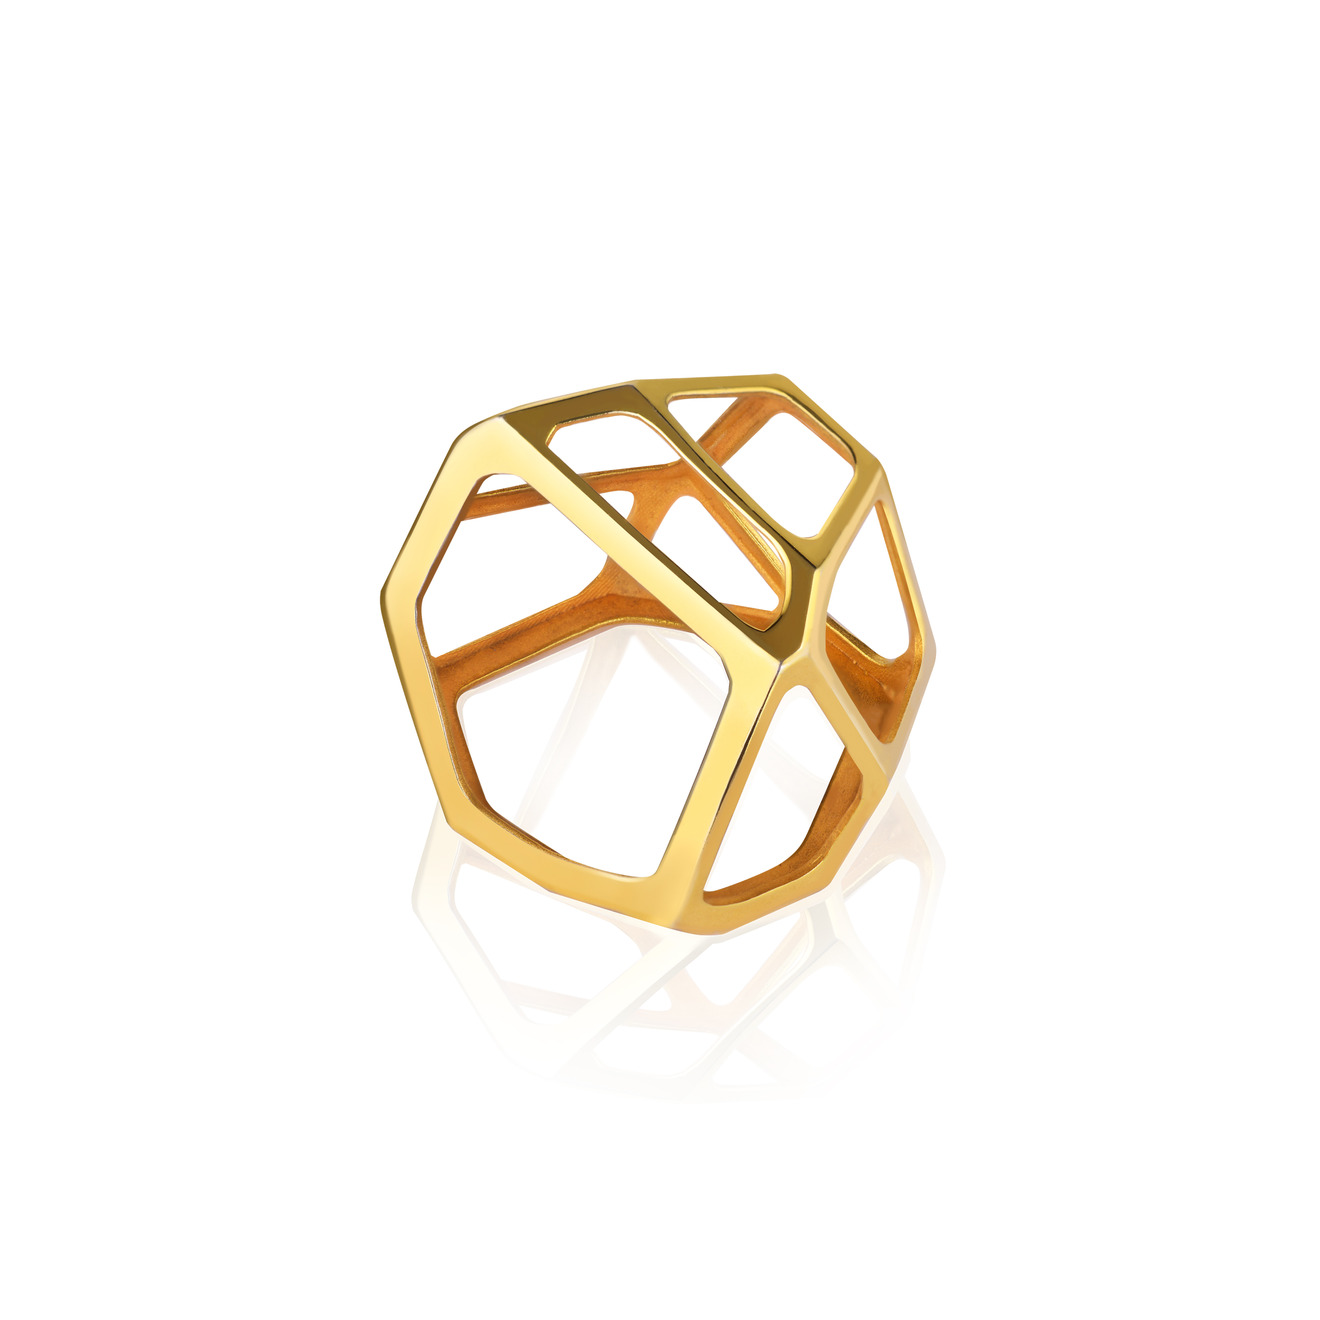 Vertigo Jewellery Lab Позолоченное безразмерное кольцо-подвеска из серебра “CELL MONO” vertigo jewellery lab позолоченное безразмерное кольцо подвеска из серебра “cell mono”